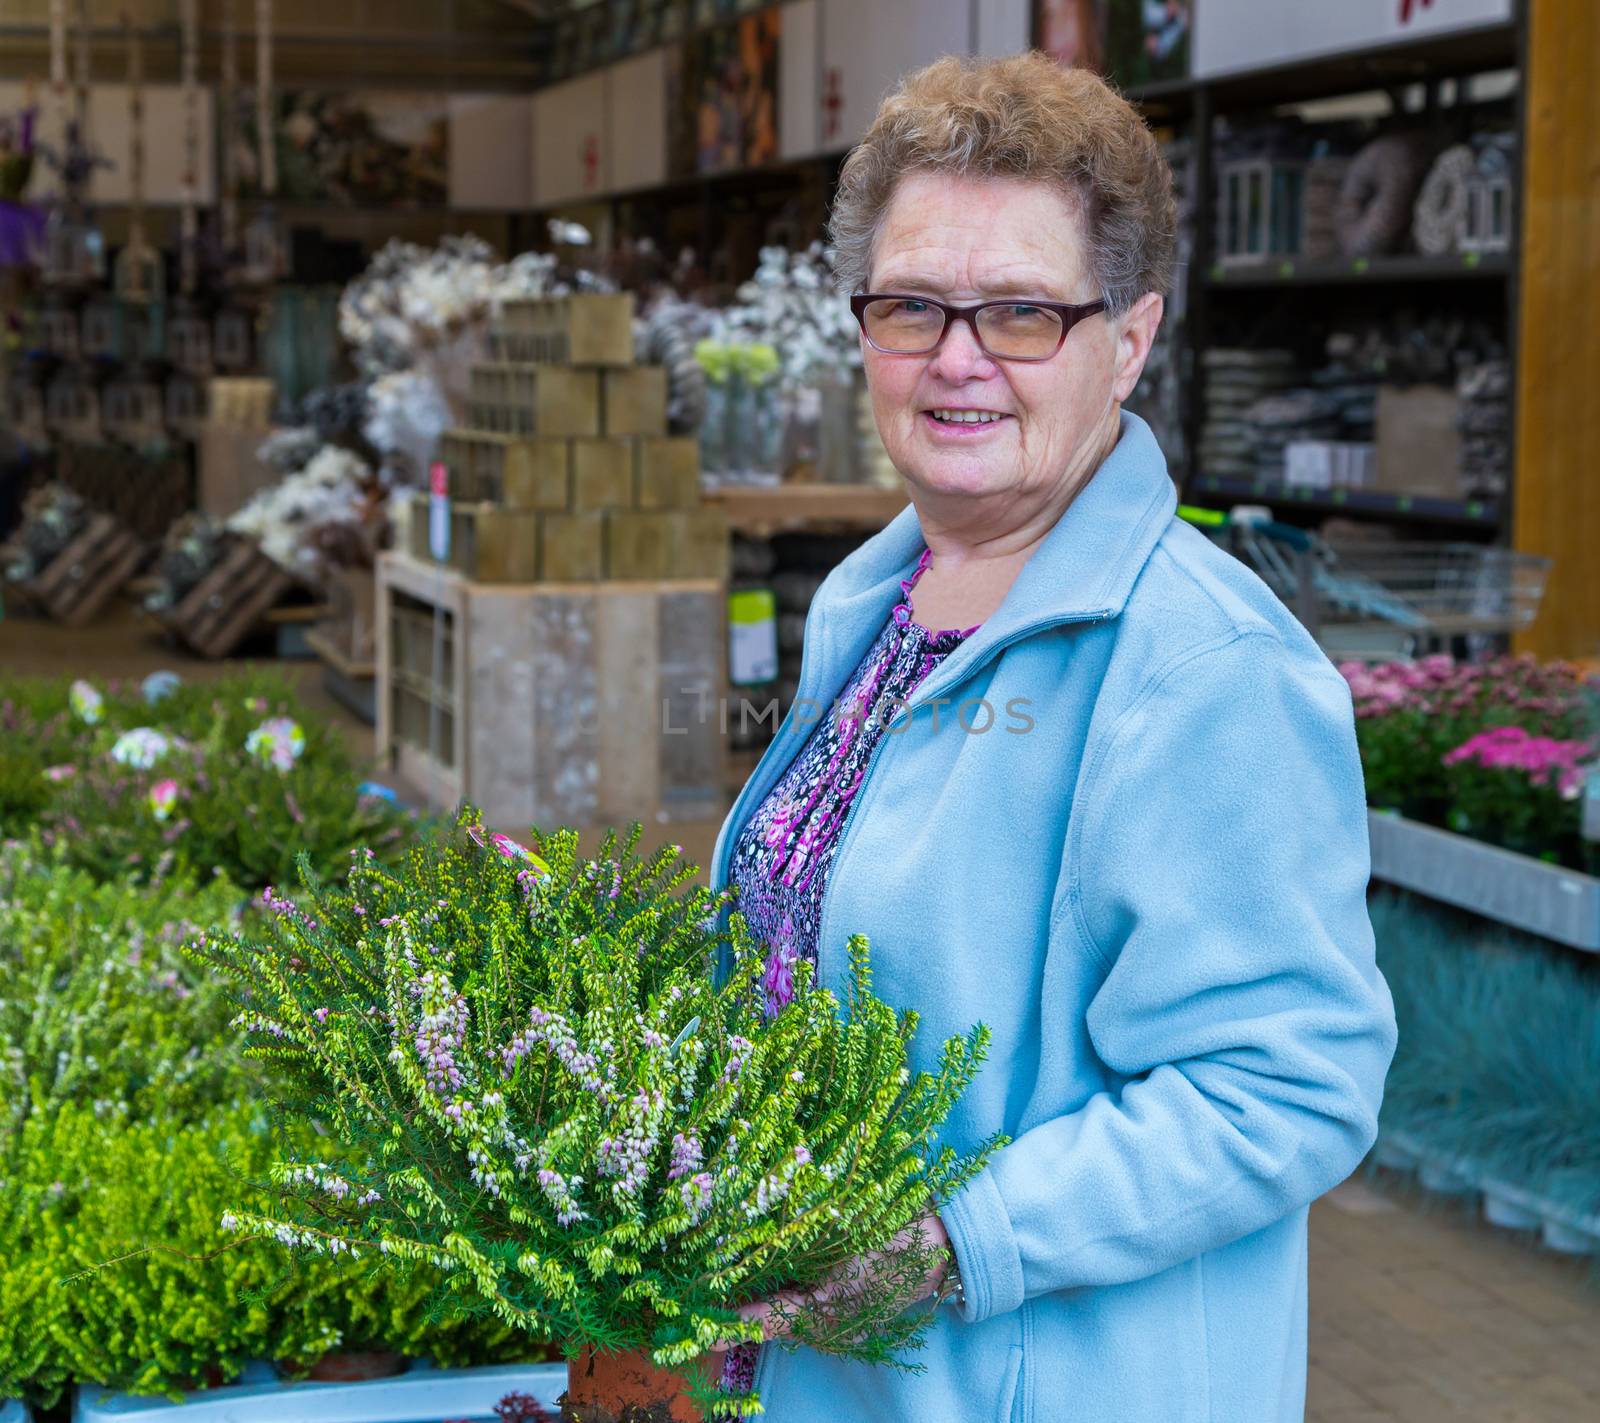 Elderly woman buying heather in garden shop by BenSchonewille